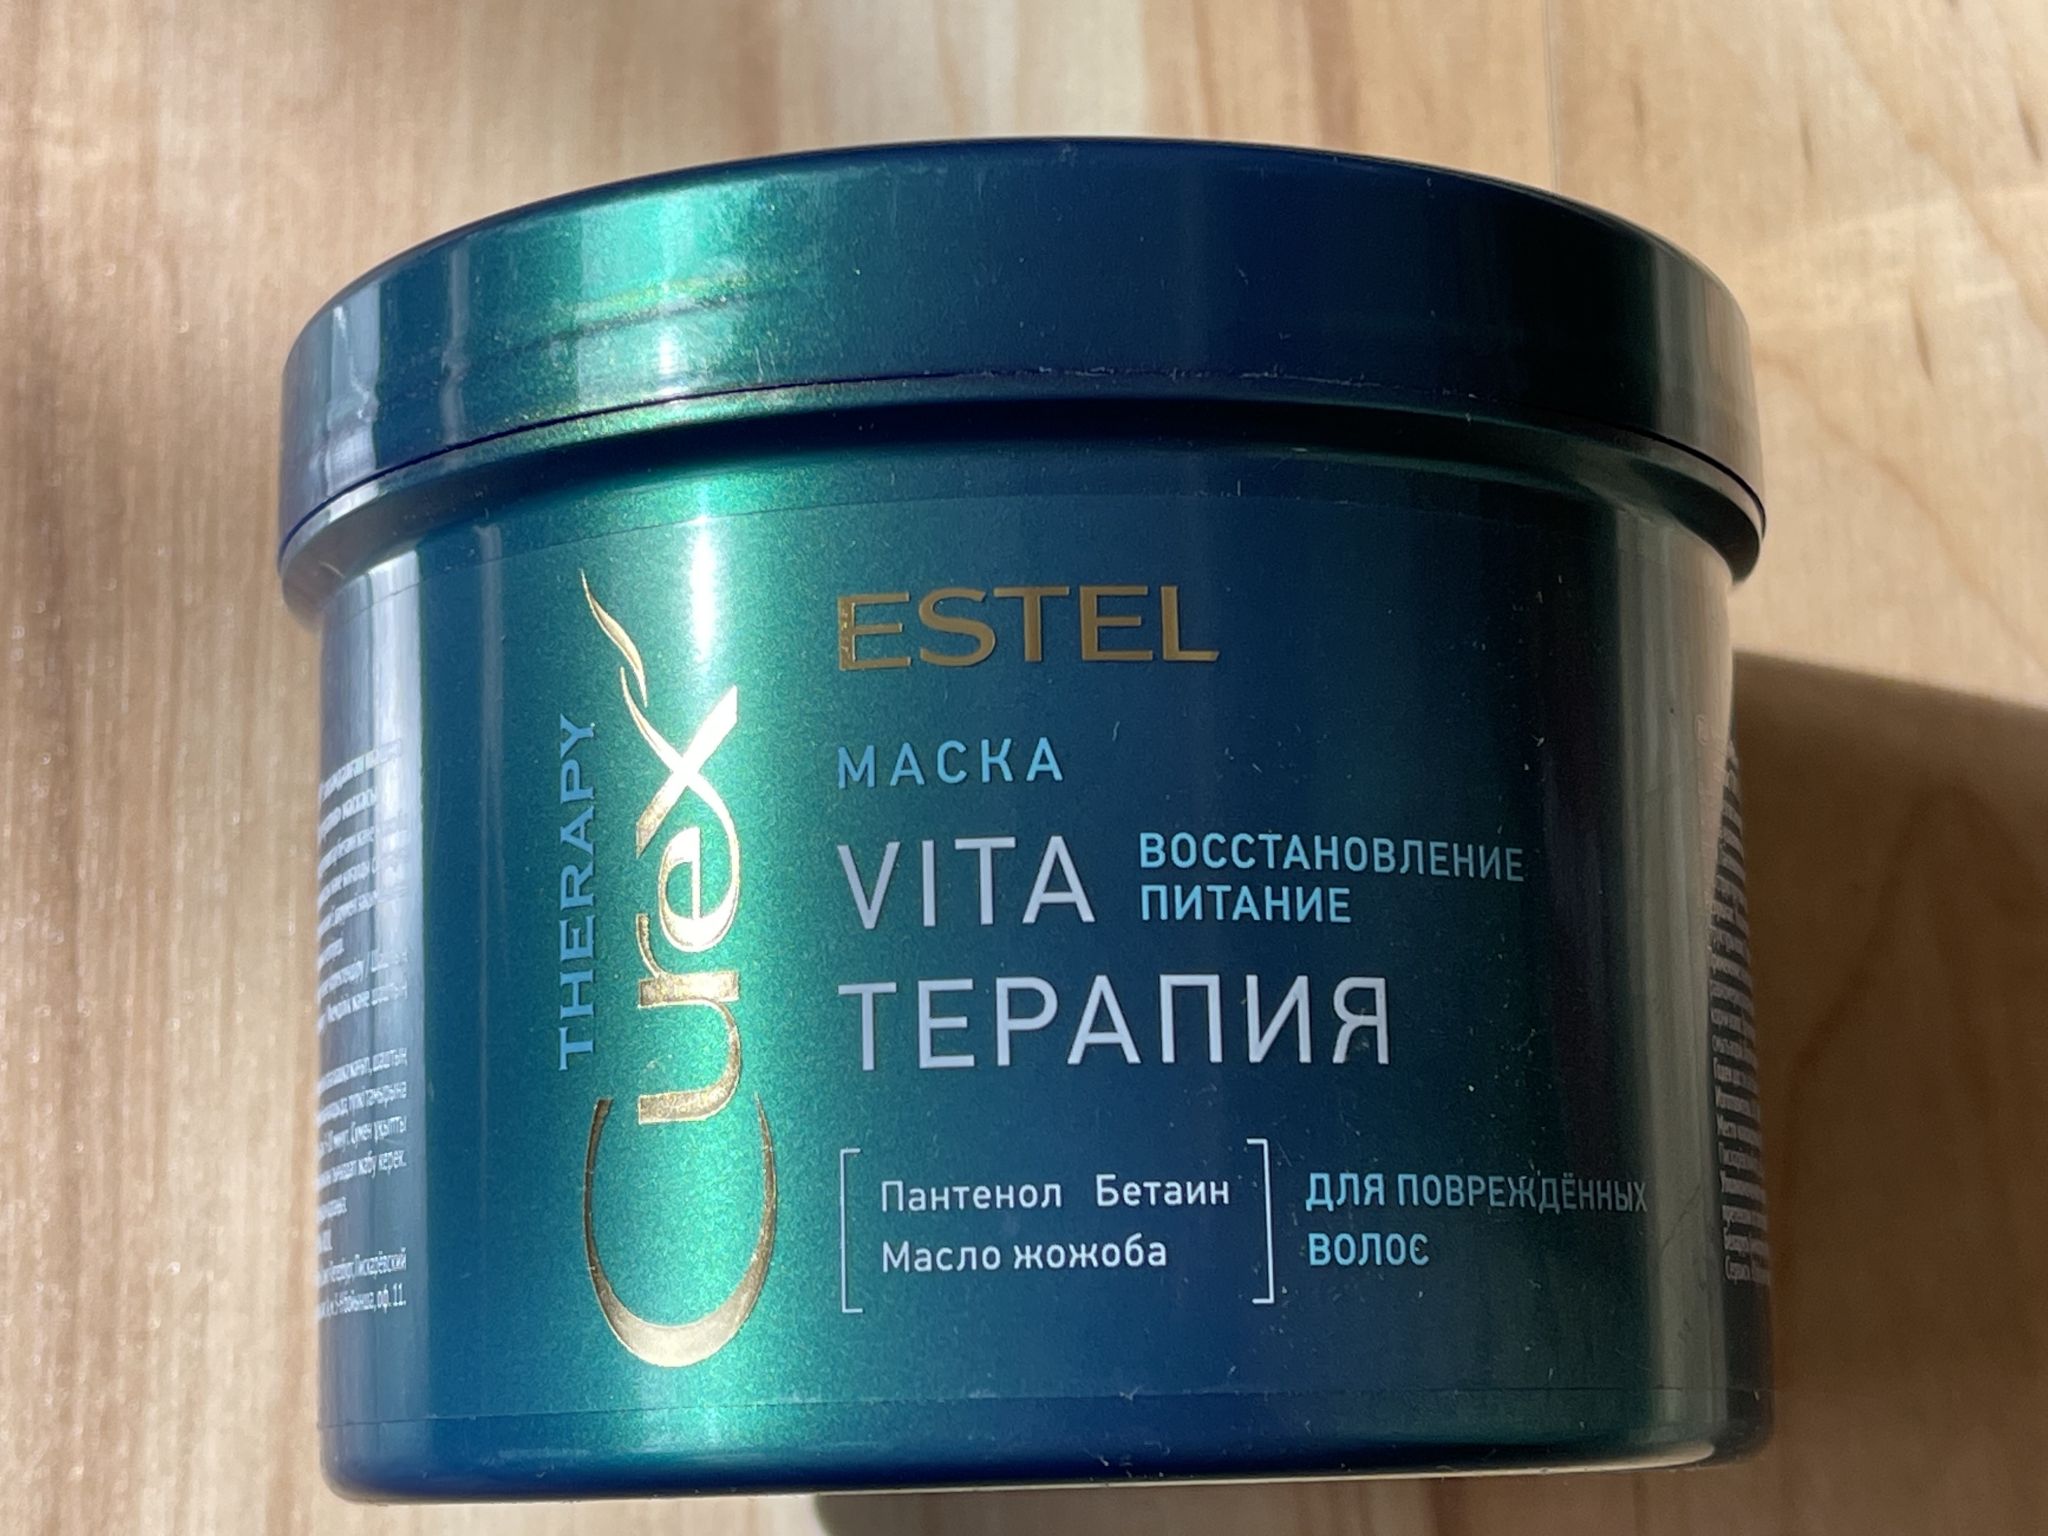 Маска vita терапия. Estel Curex маска Vita терапия Therapy 500 мл. Маска "Vita-терапия" для повреждённых волос Curex Therapy (500 мл). Маска Эстель курекс.